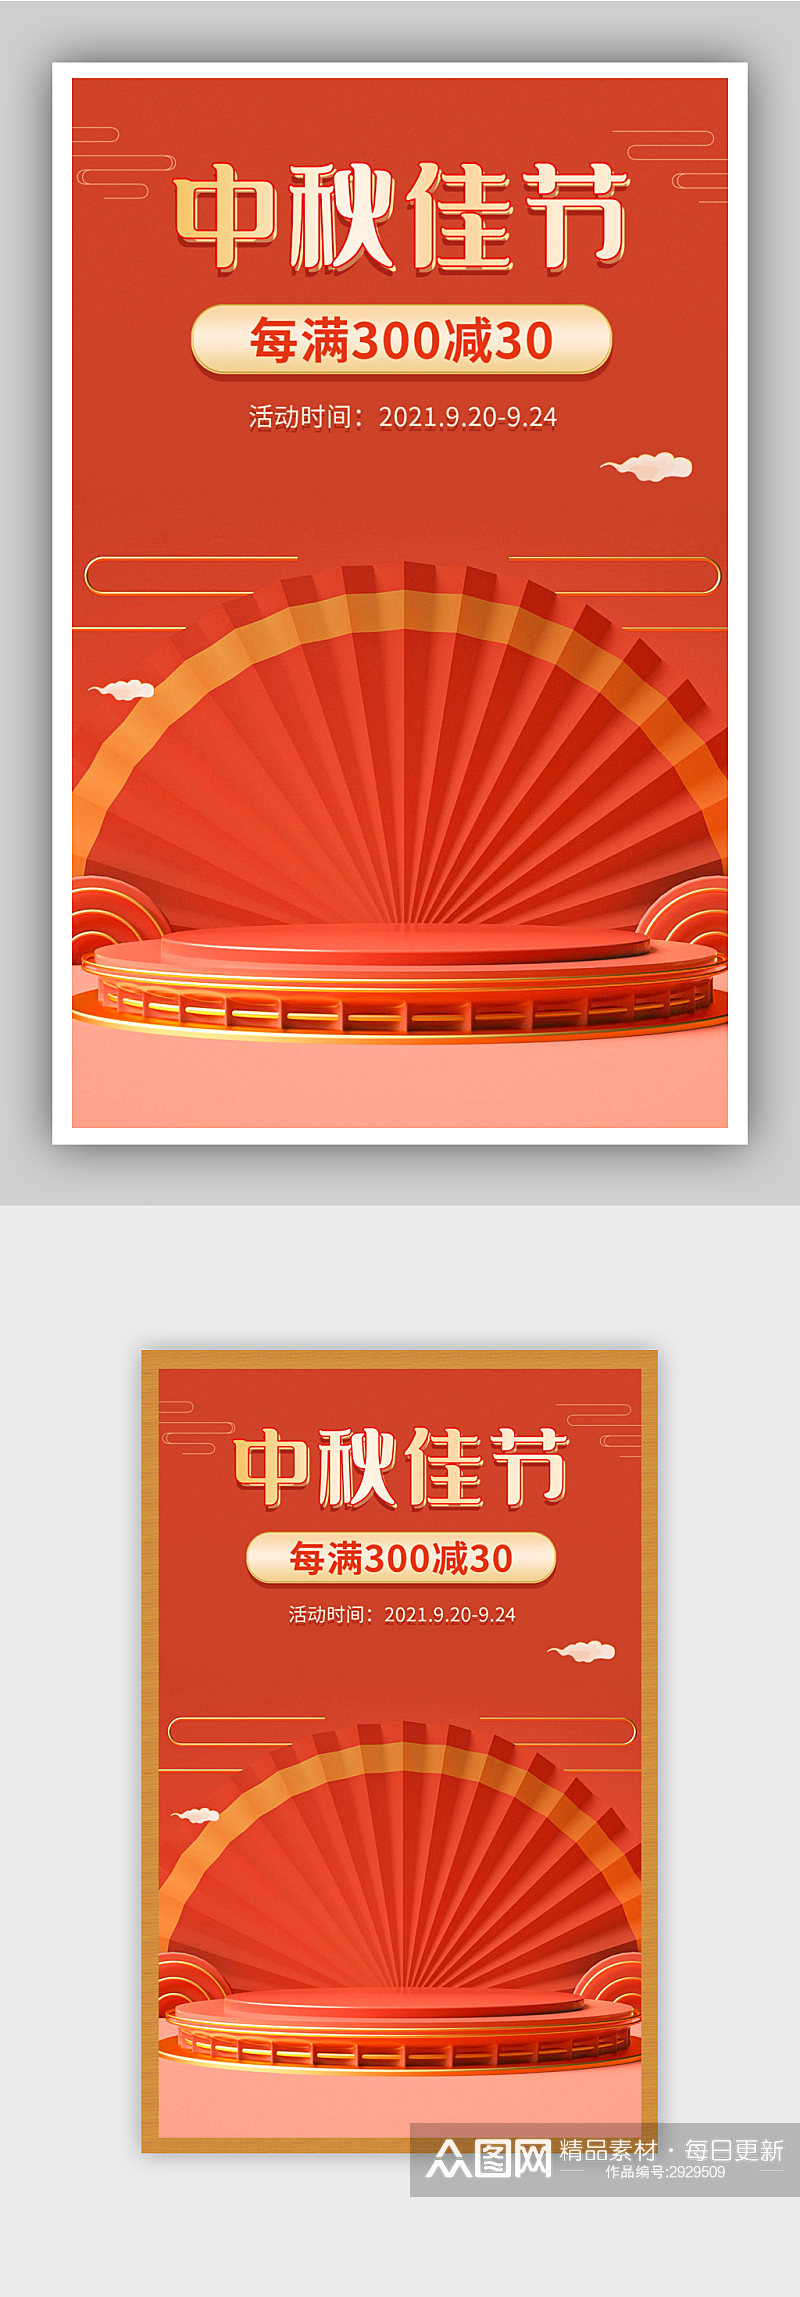 中秋节红色活动促销海报素材